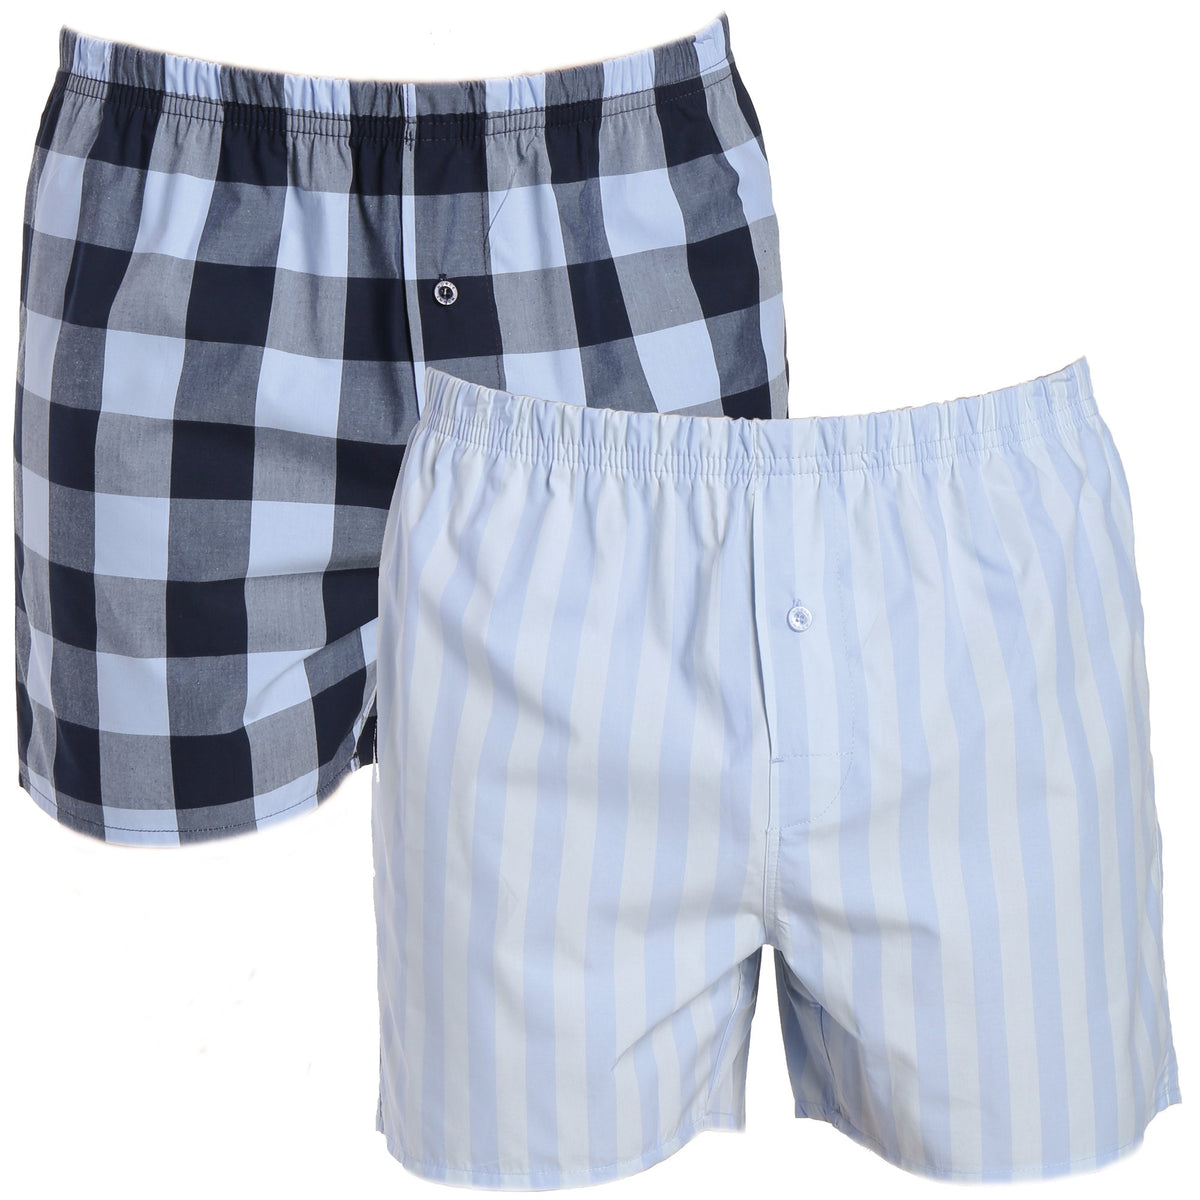 Men's Premium Cotton Boxers - 2 Pack - Gingham-Stripes Blue